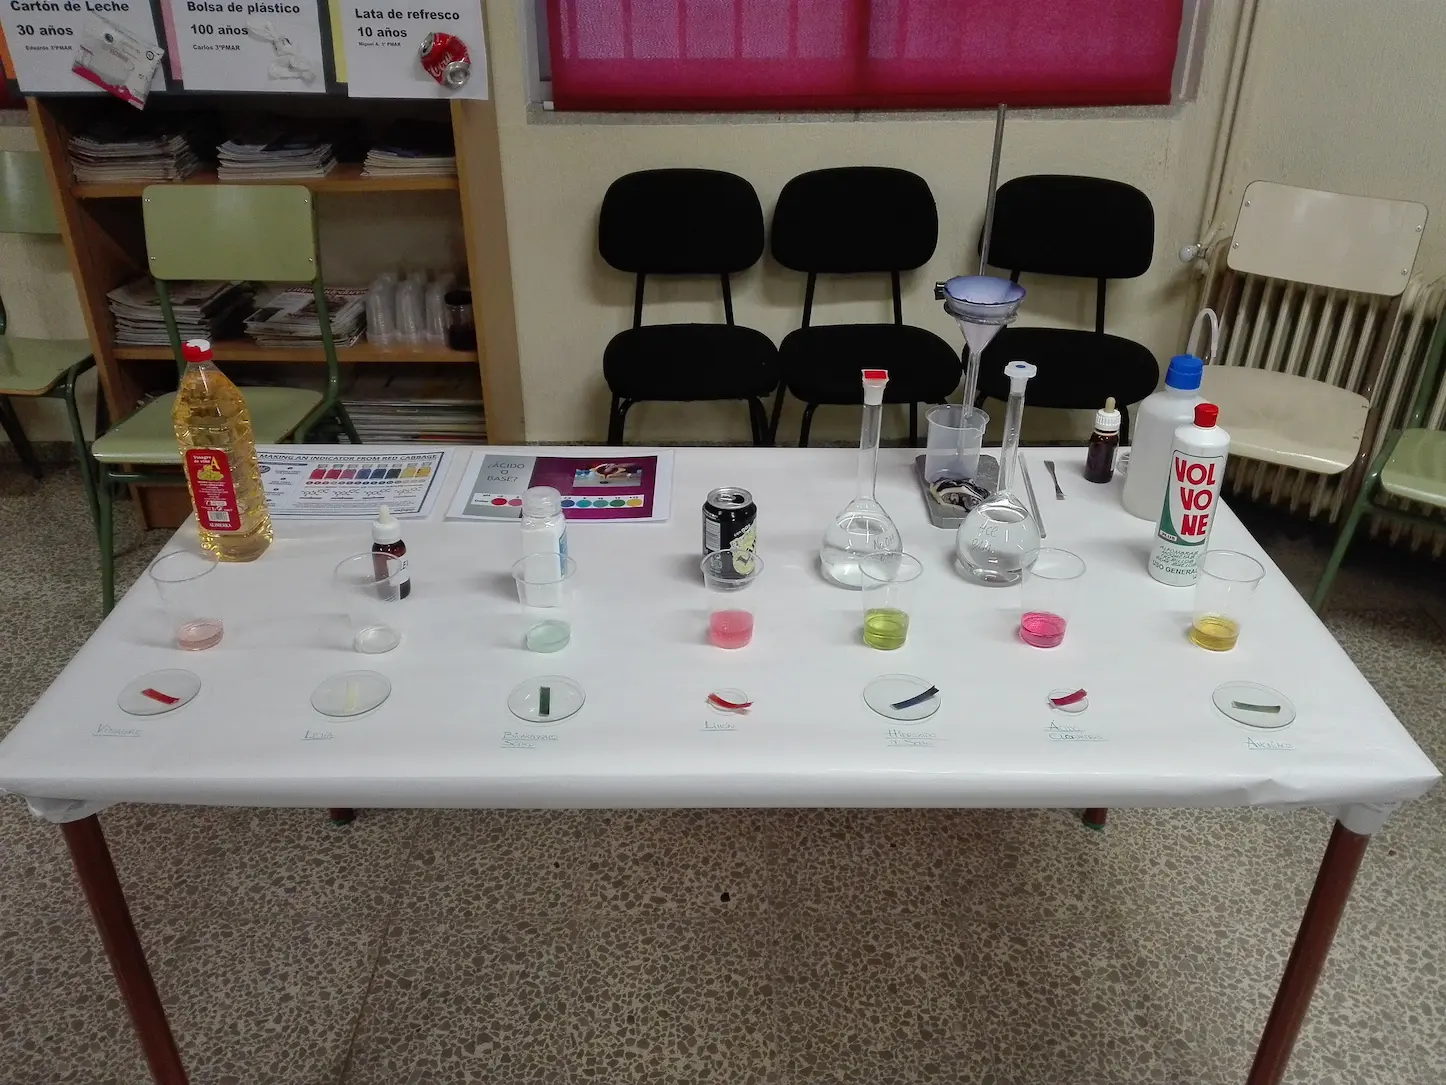 Fotografía de los resultados de las diferentes sustancias con el jugo de la lombarda.